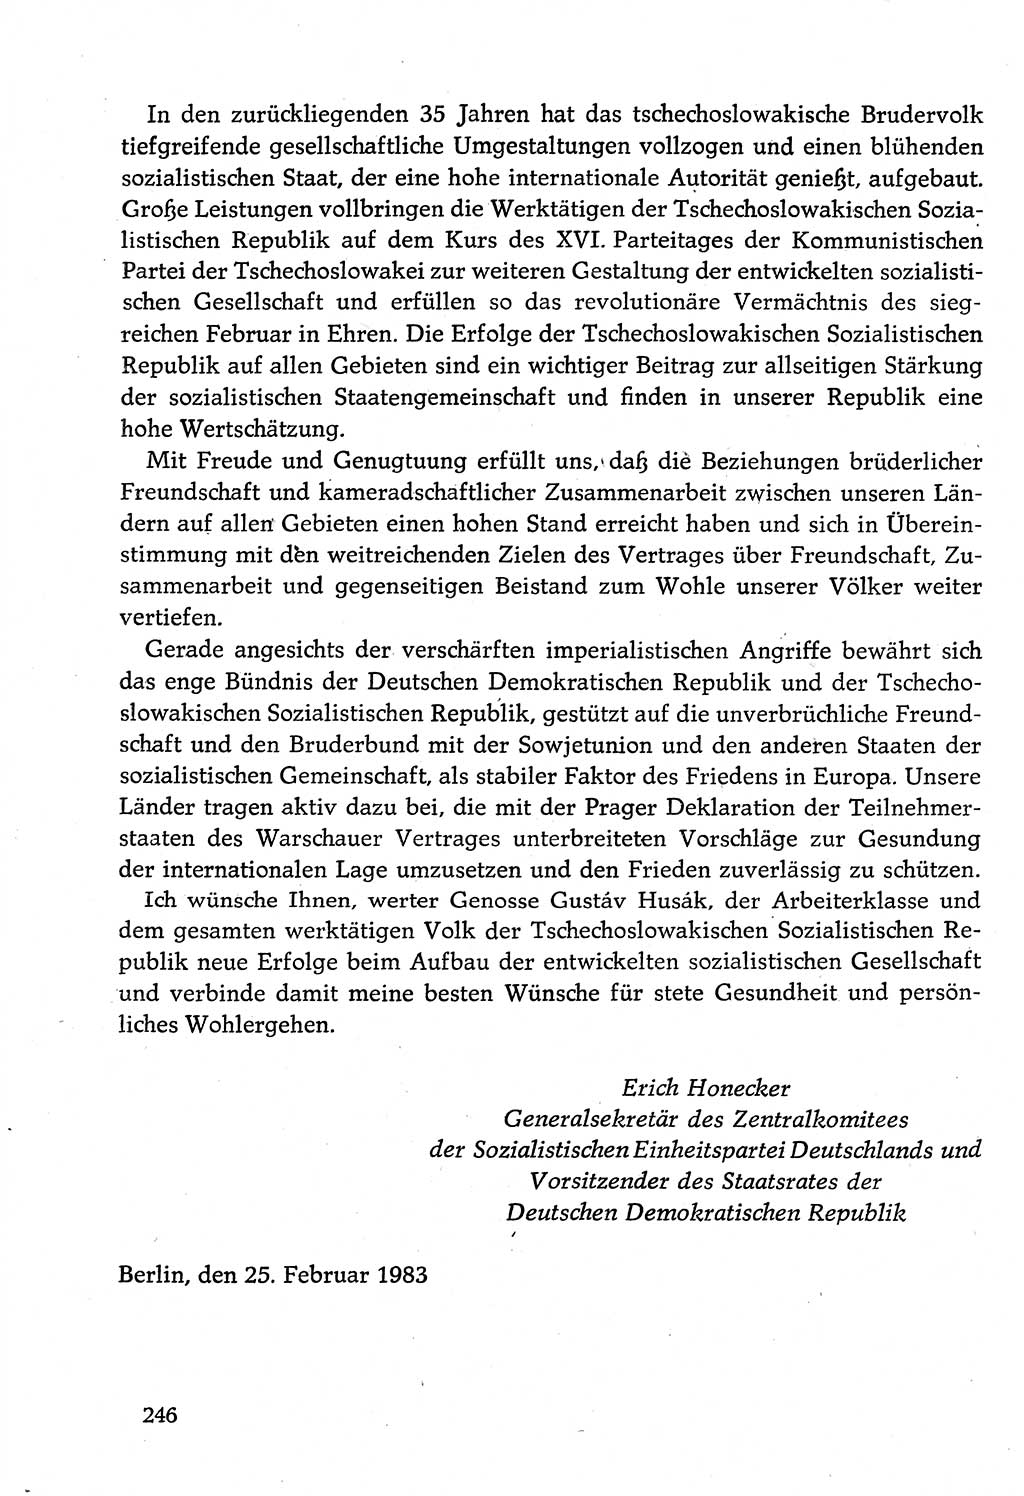 Dokumente der Sozialistischen Einheitspartei Deutschlands (SED) [Deutsche Demokratische Republik (DDR)] 1982-1983, Seite 246 (Dok. SED DDR 1982-1983, S. 246)